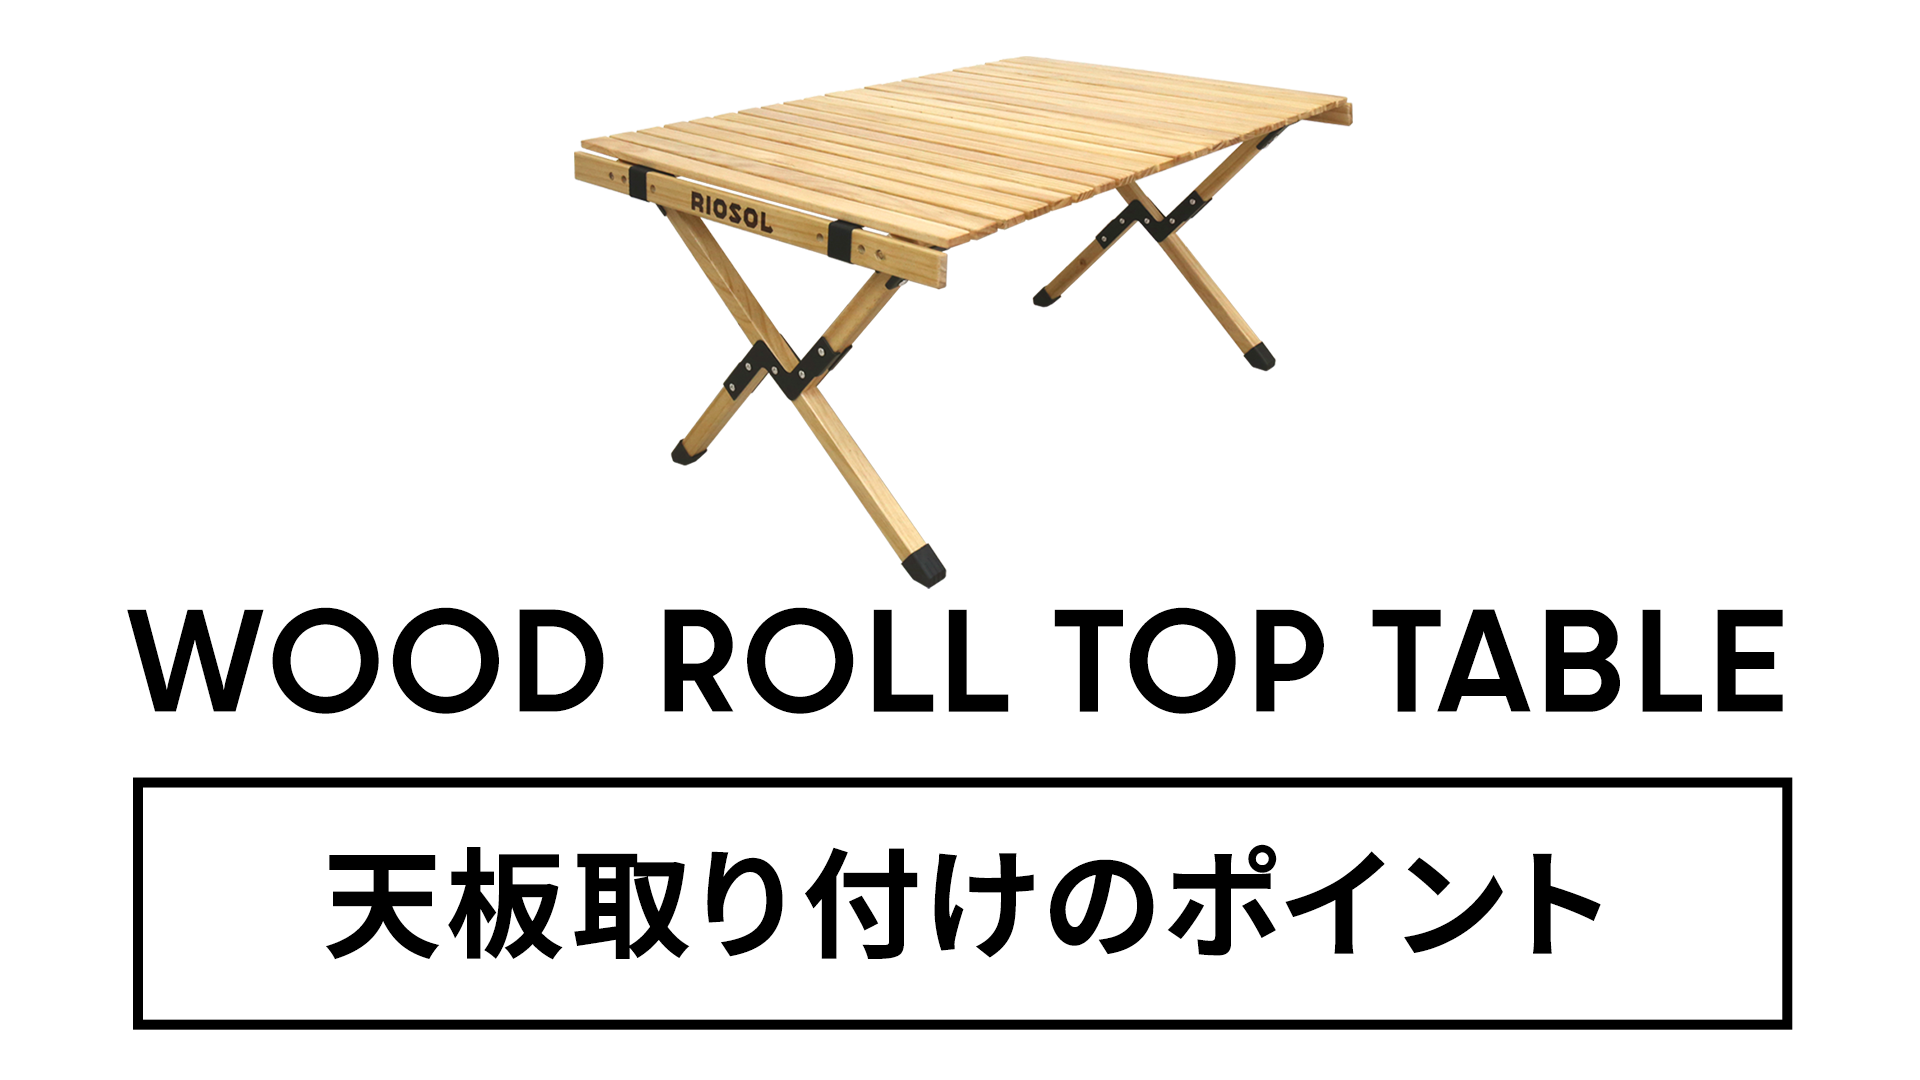 ウッドロールトップテーブル – RIOSOL